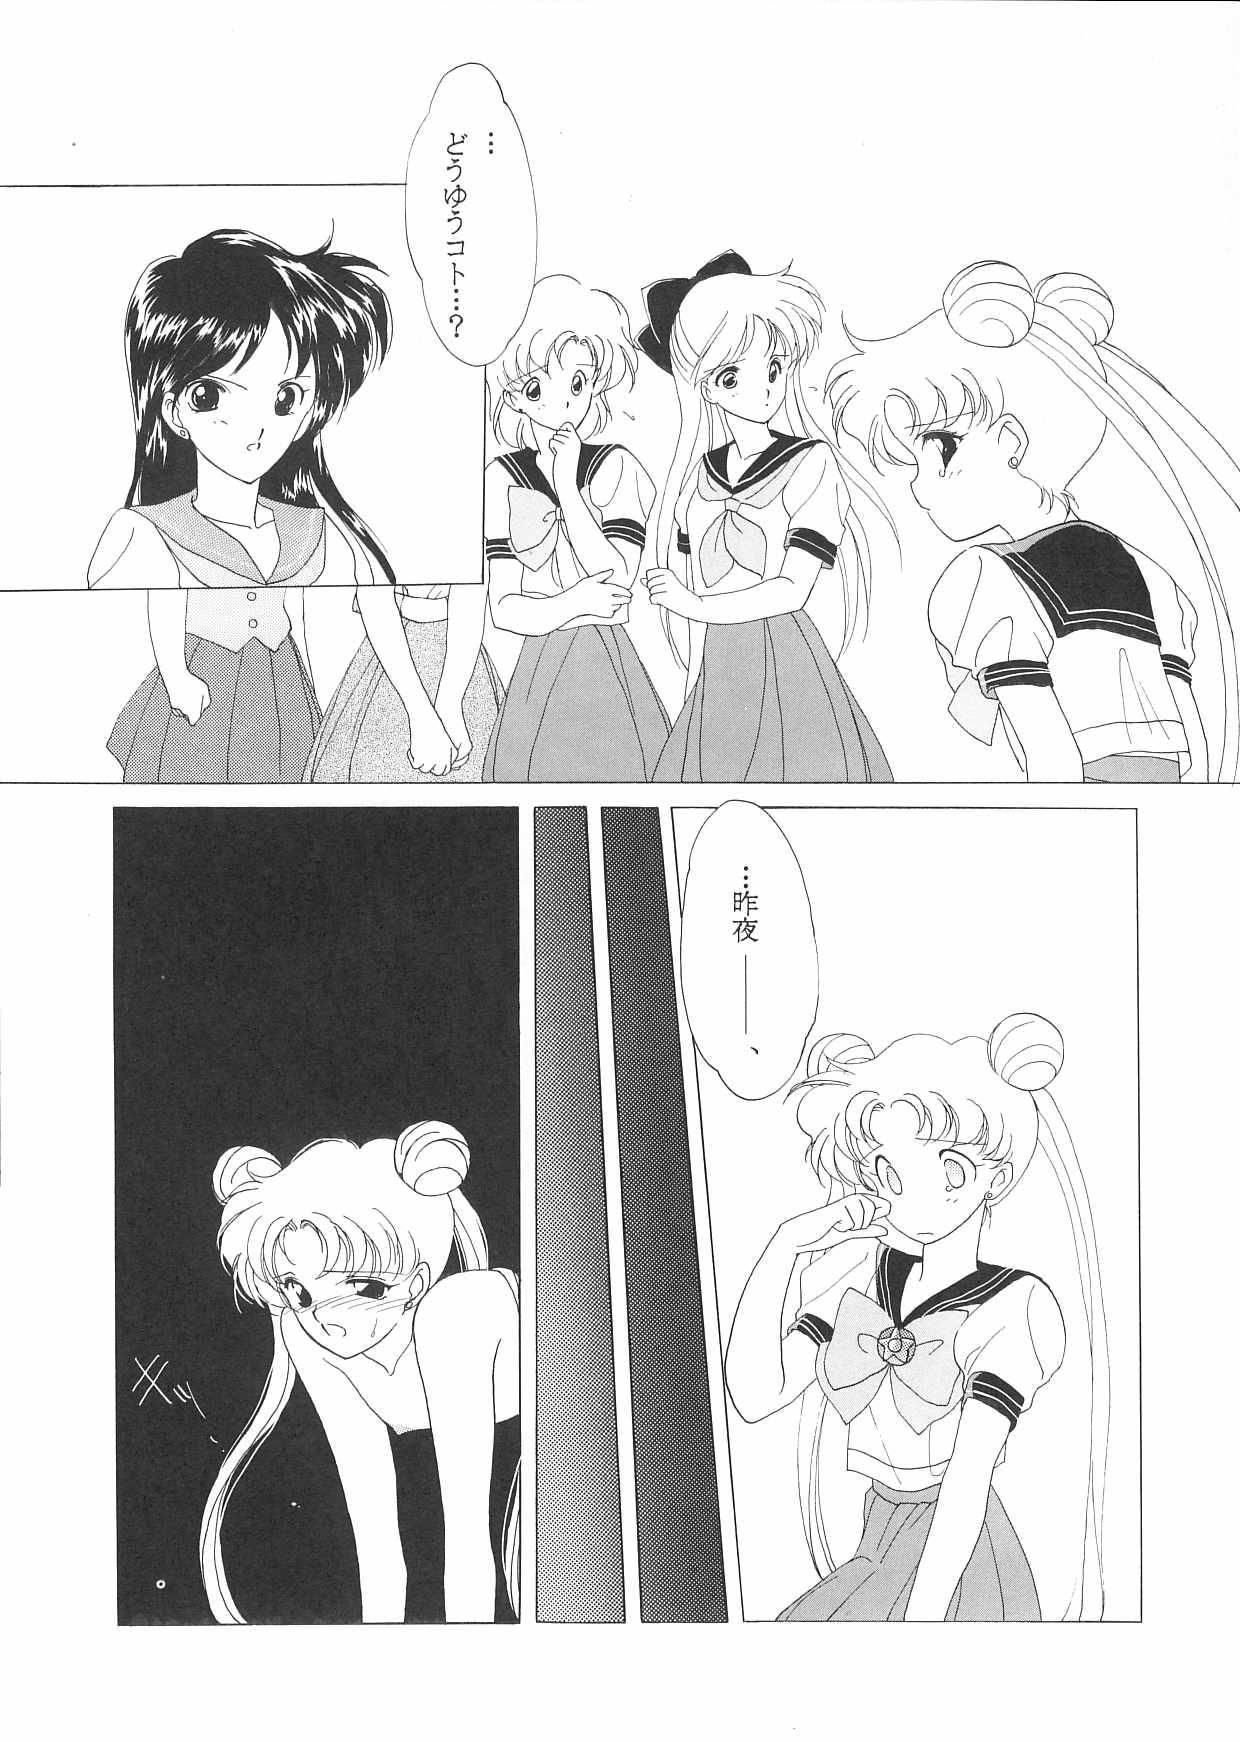 Public Nudity Pretty Soldier Sailor Moon F - Sailor moon Roludo - Page 5